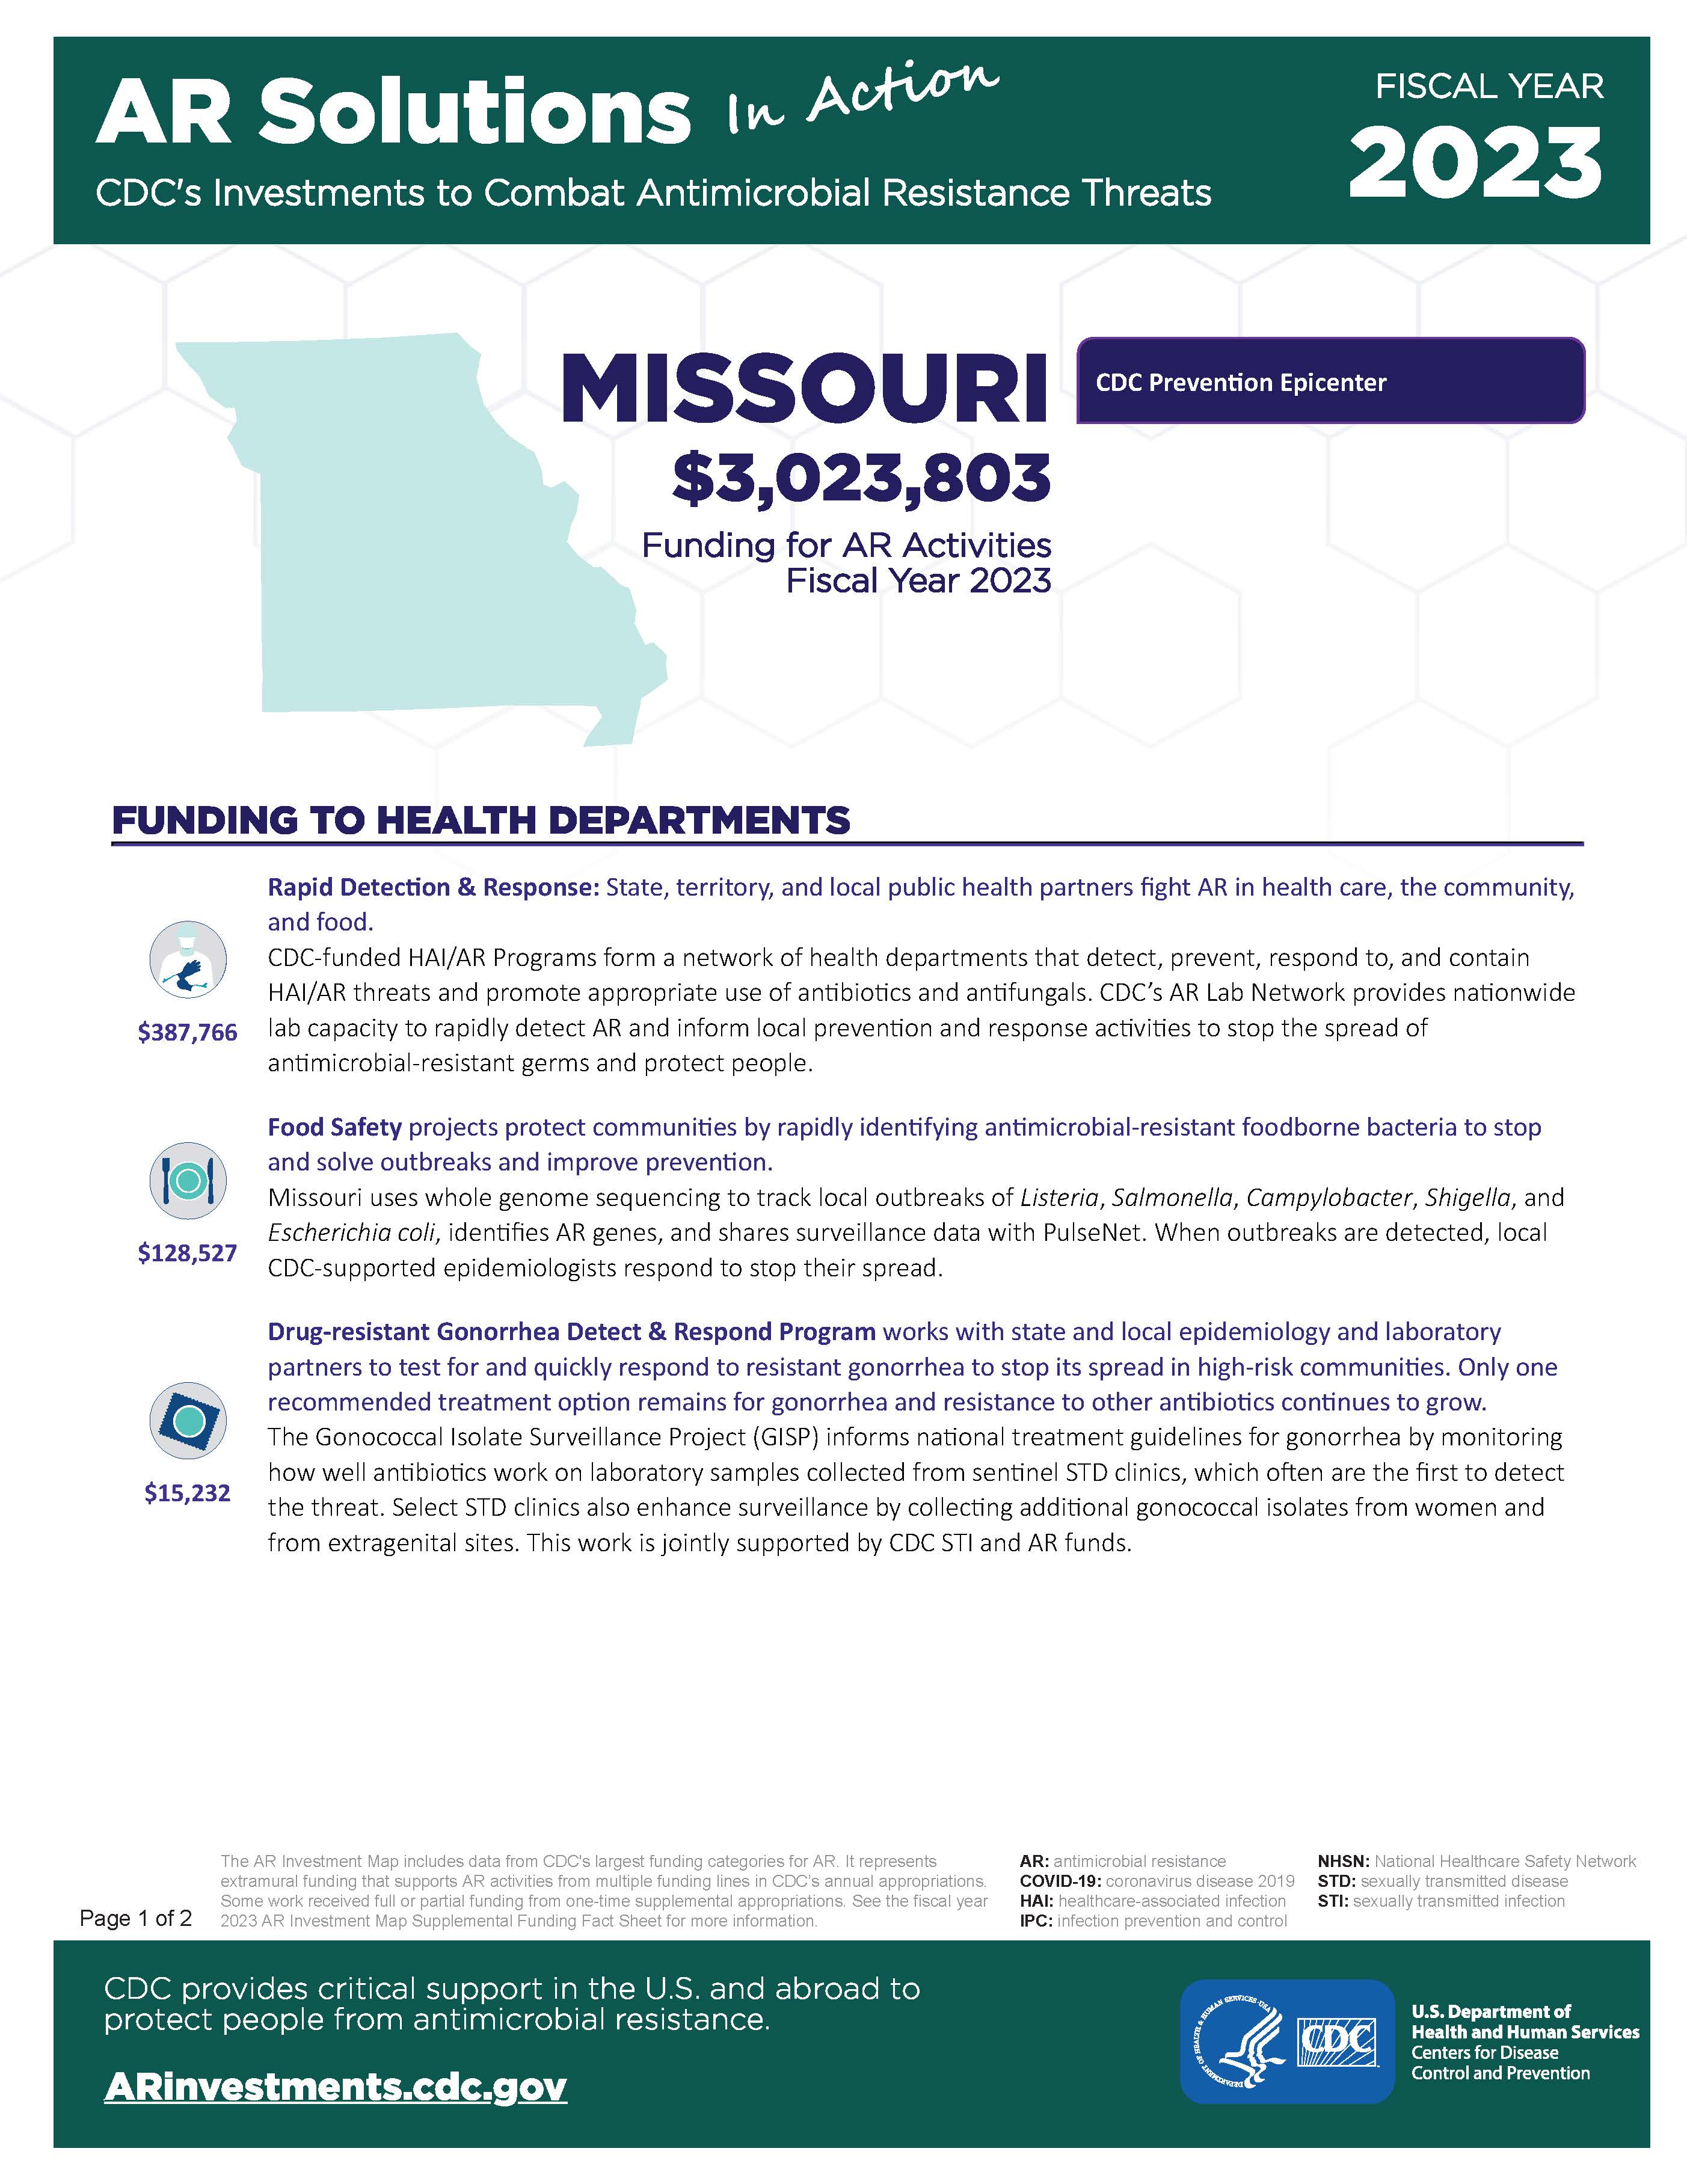 View Factsheet for Missouri